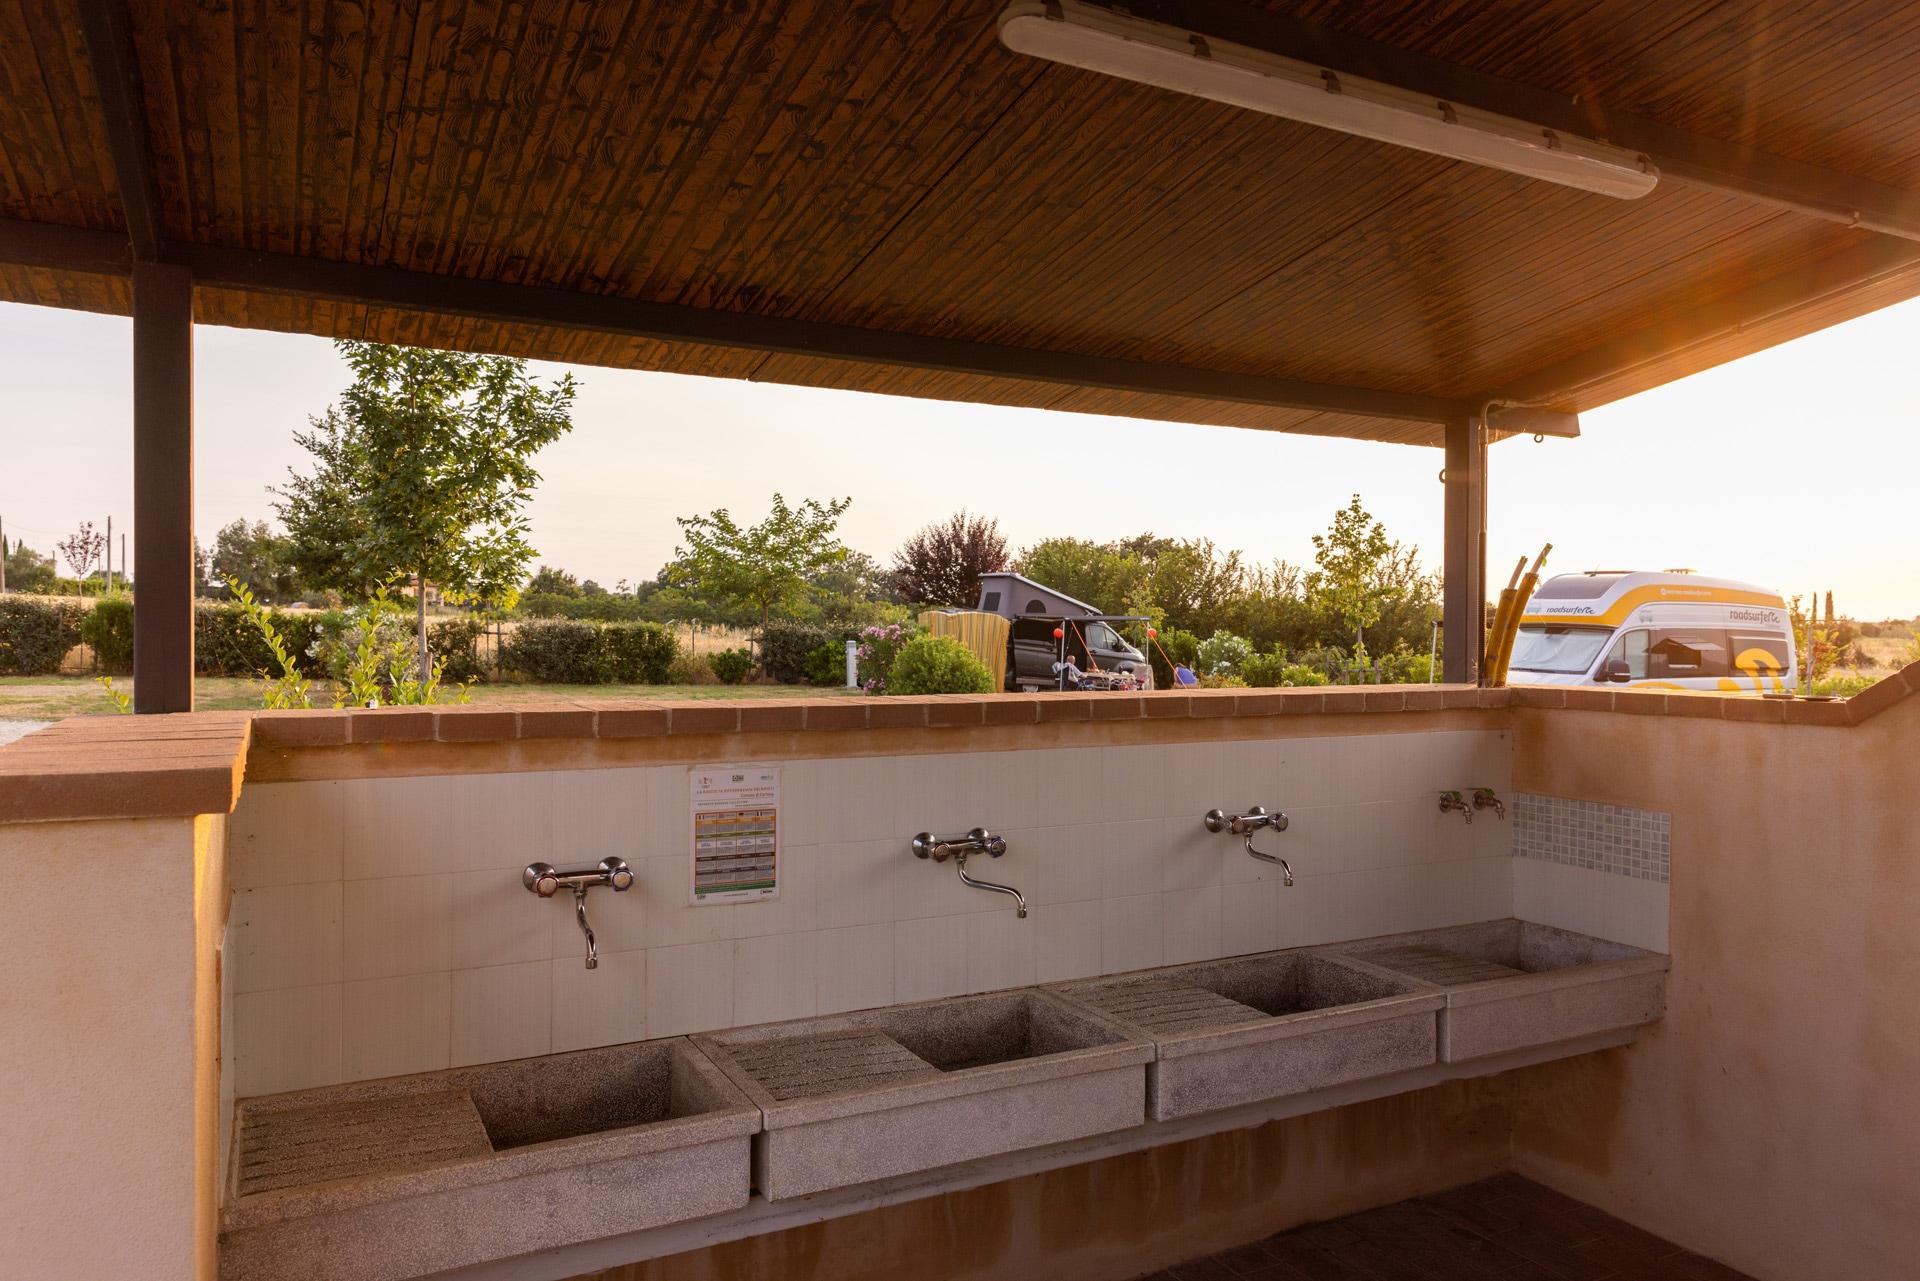 Camping Cortona con piscina| Agricamping Toscana